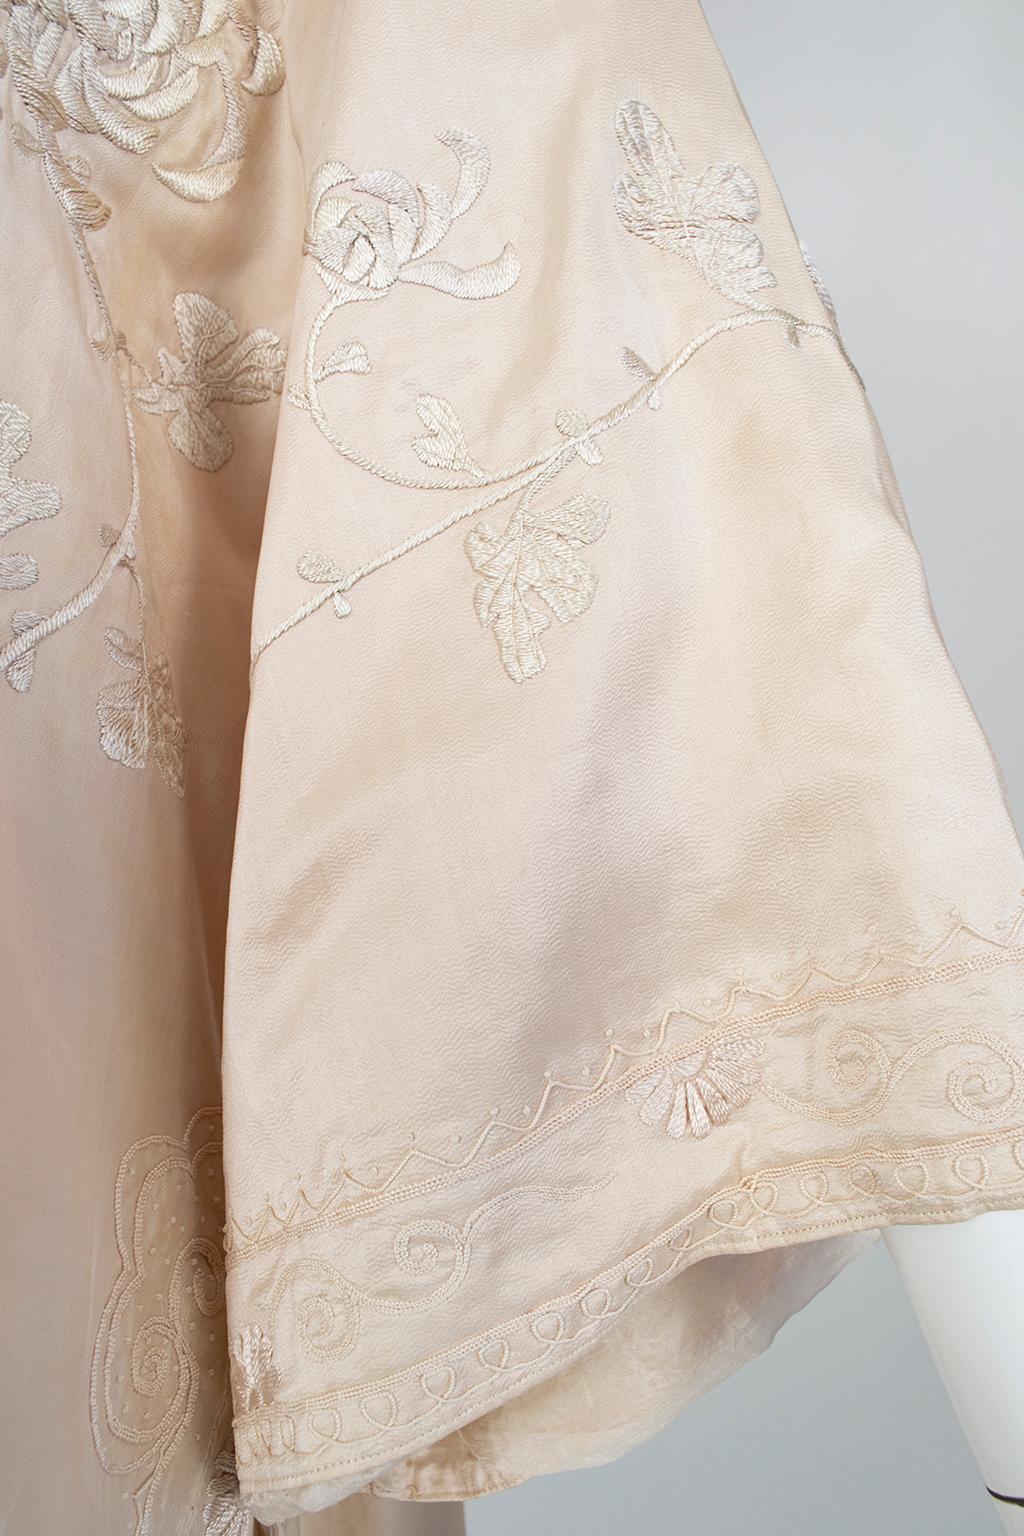 Robe édouardienne rose pâle en soie de Canton brodée (taille L/S), années 1900 en vente 8